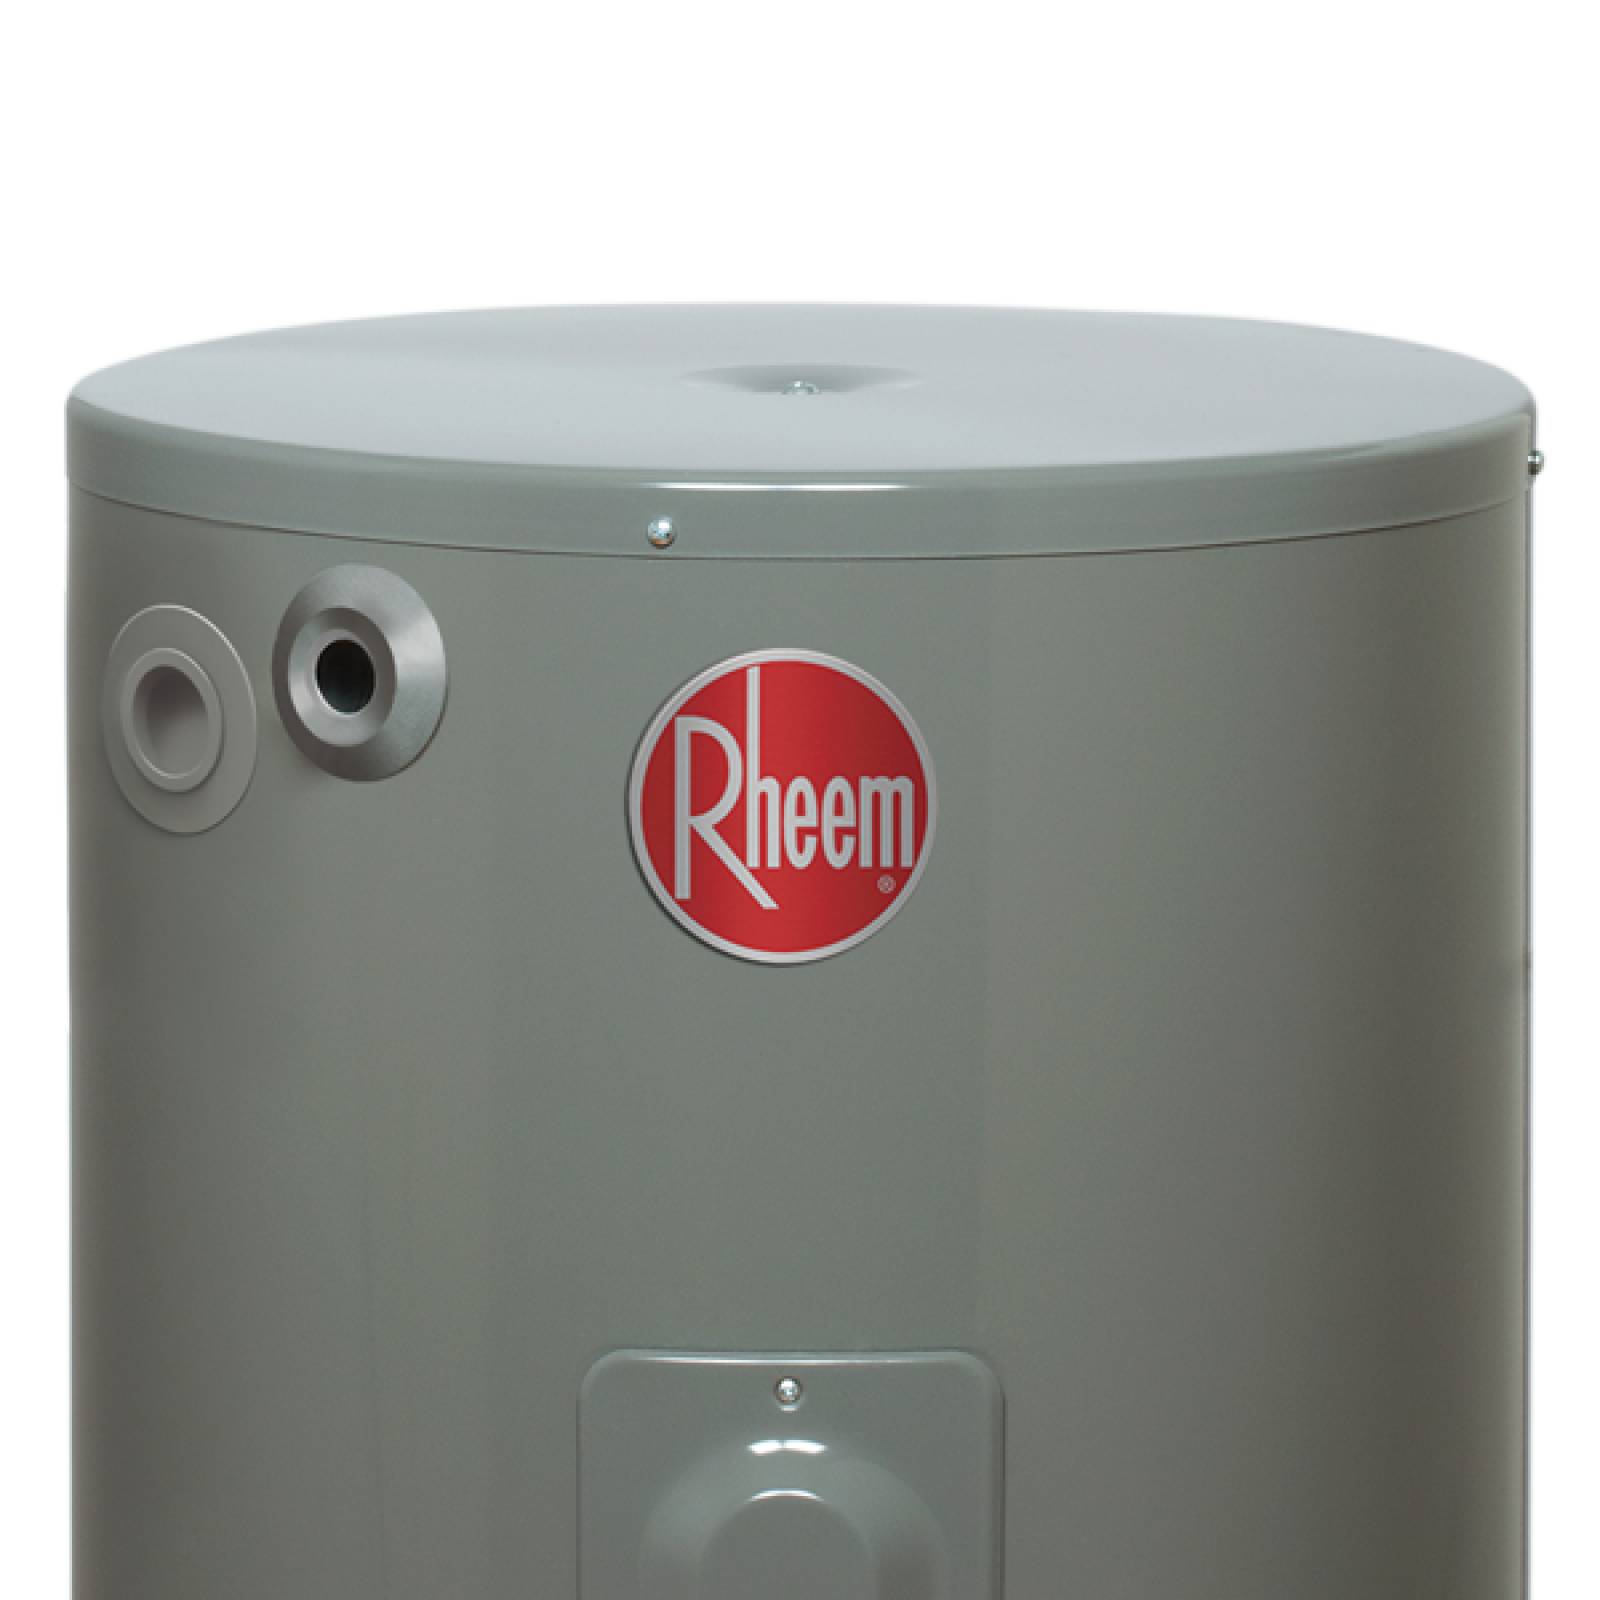 Calentador Agua Depósito Eléctrico Rheem 57L127V+Instalación 